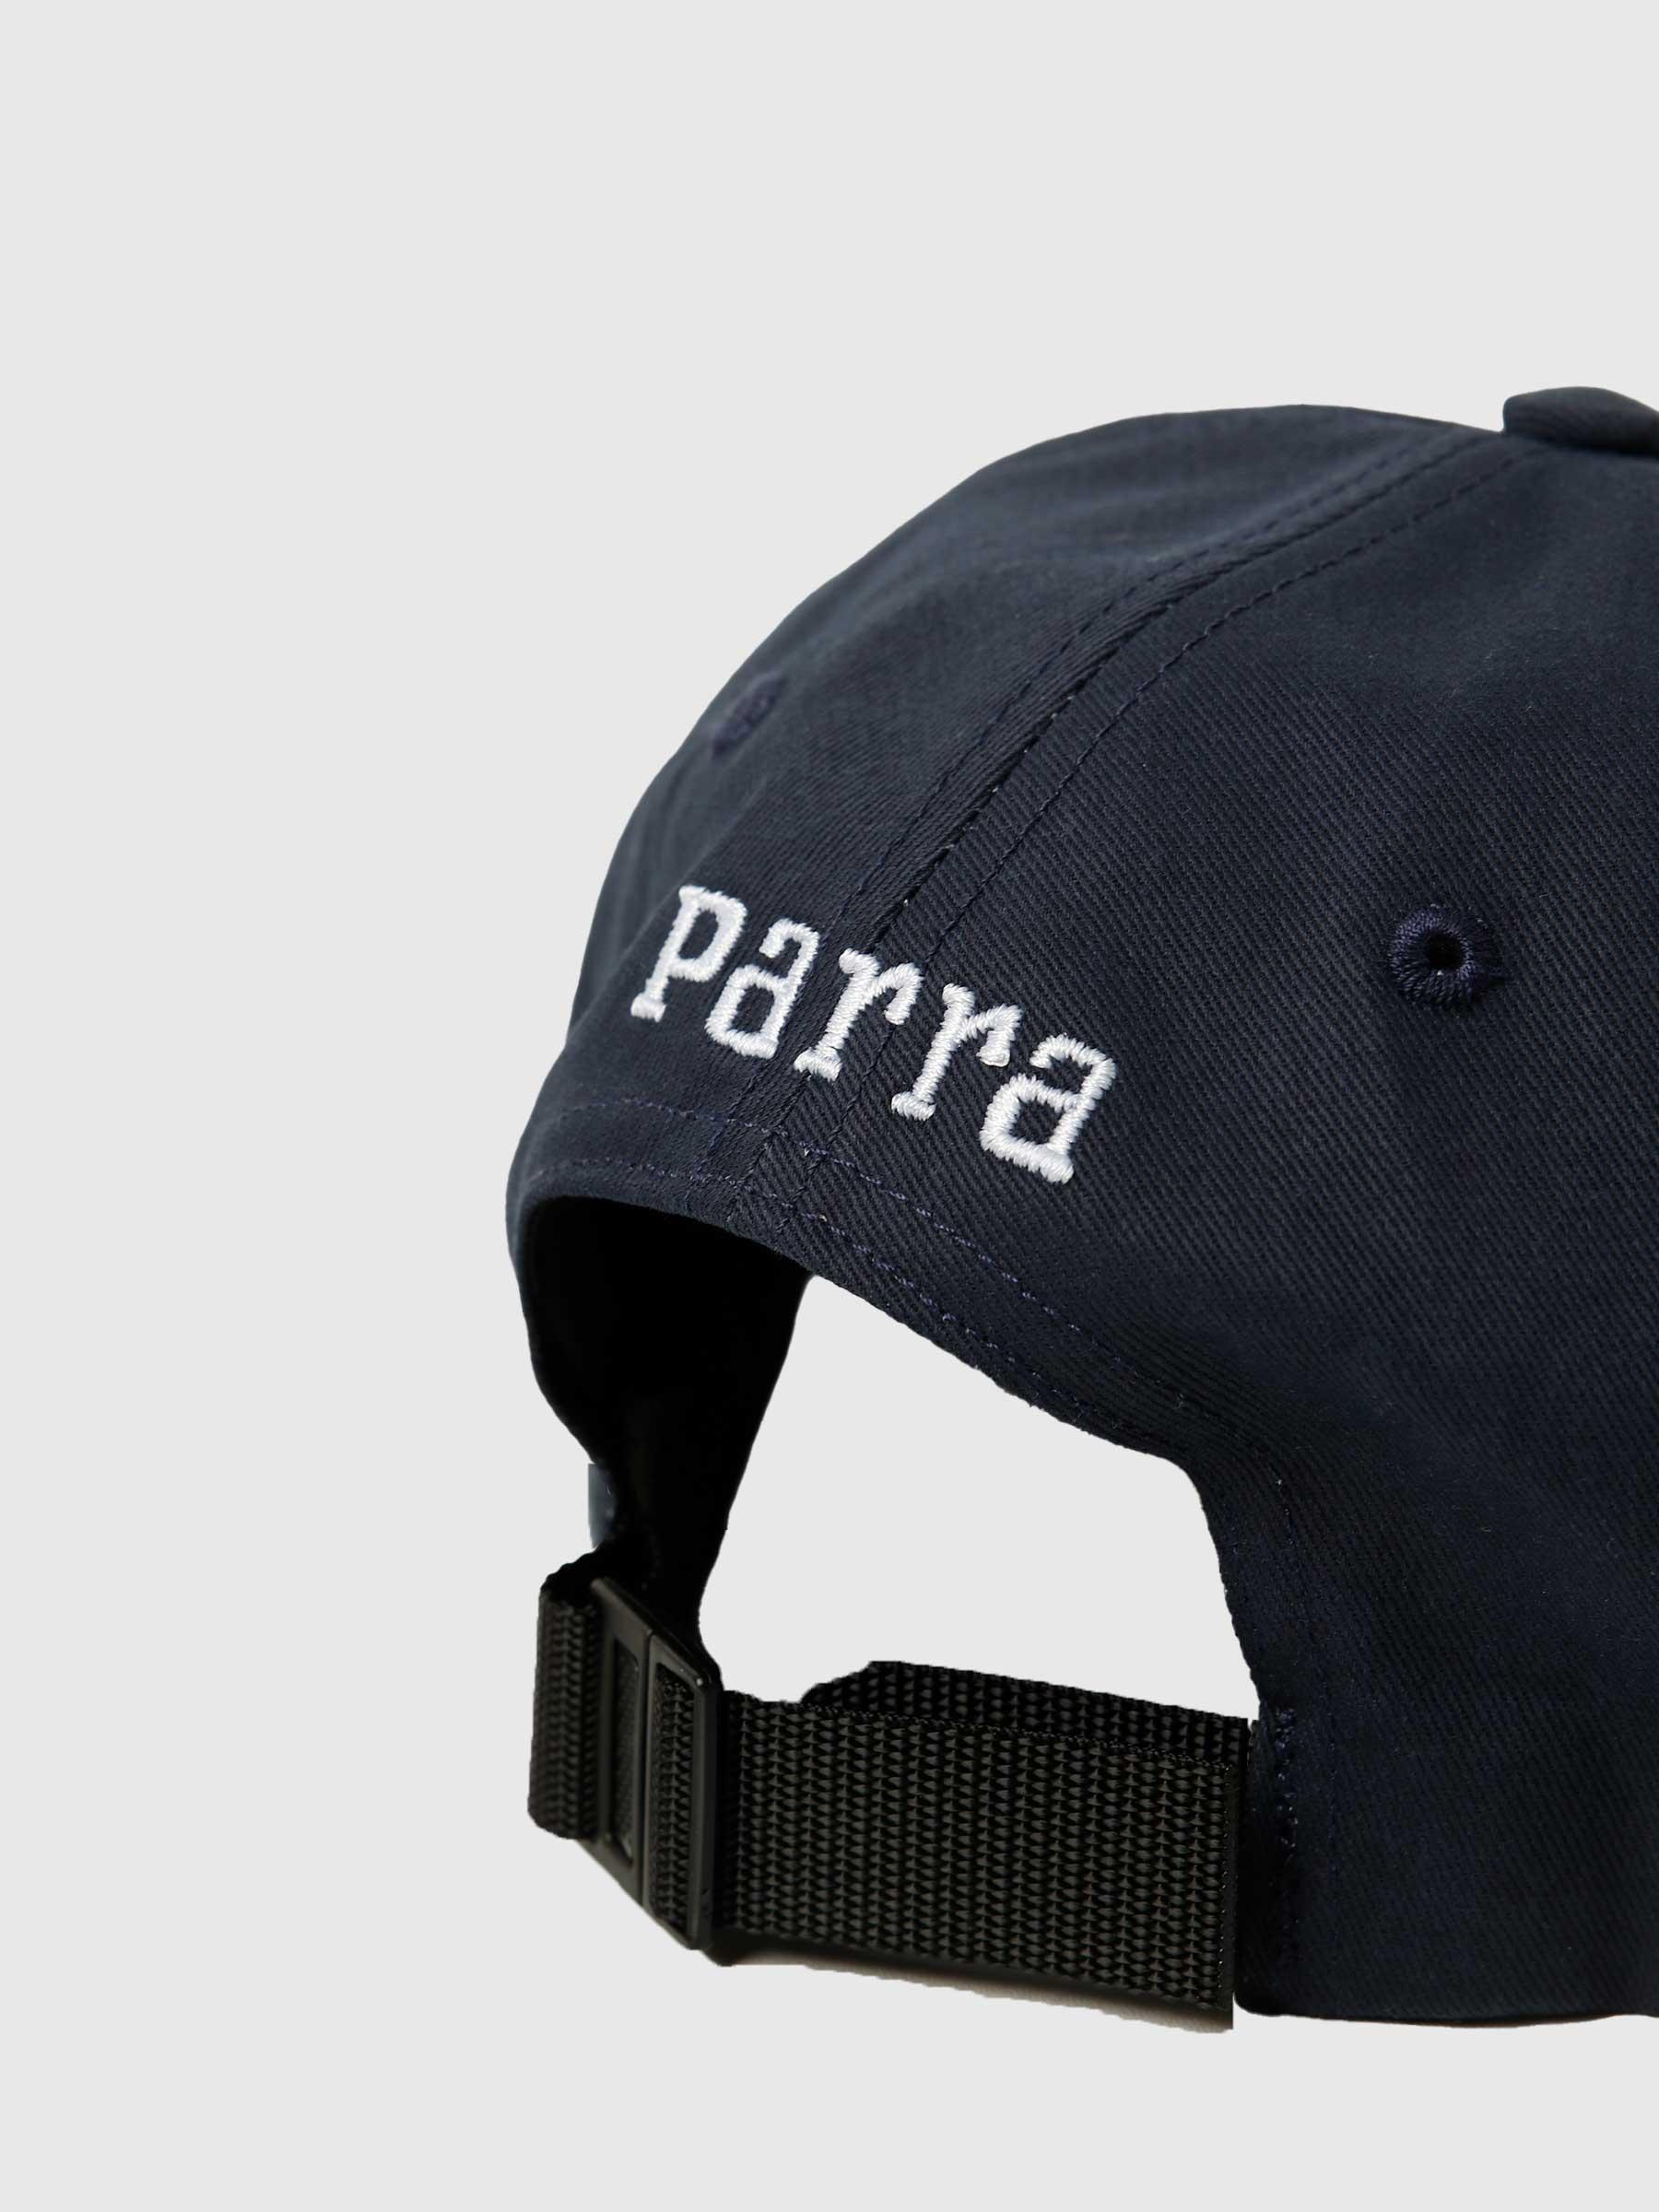 Parra Racing Team 6 Panel Hat Navy Blue 47356